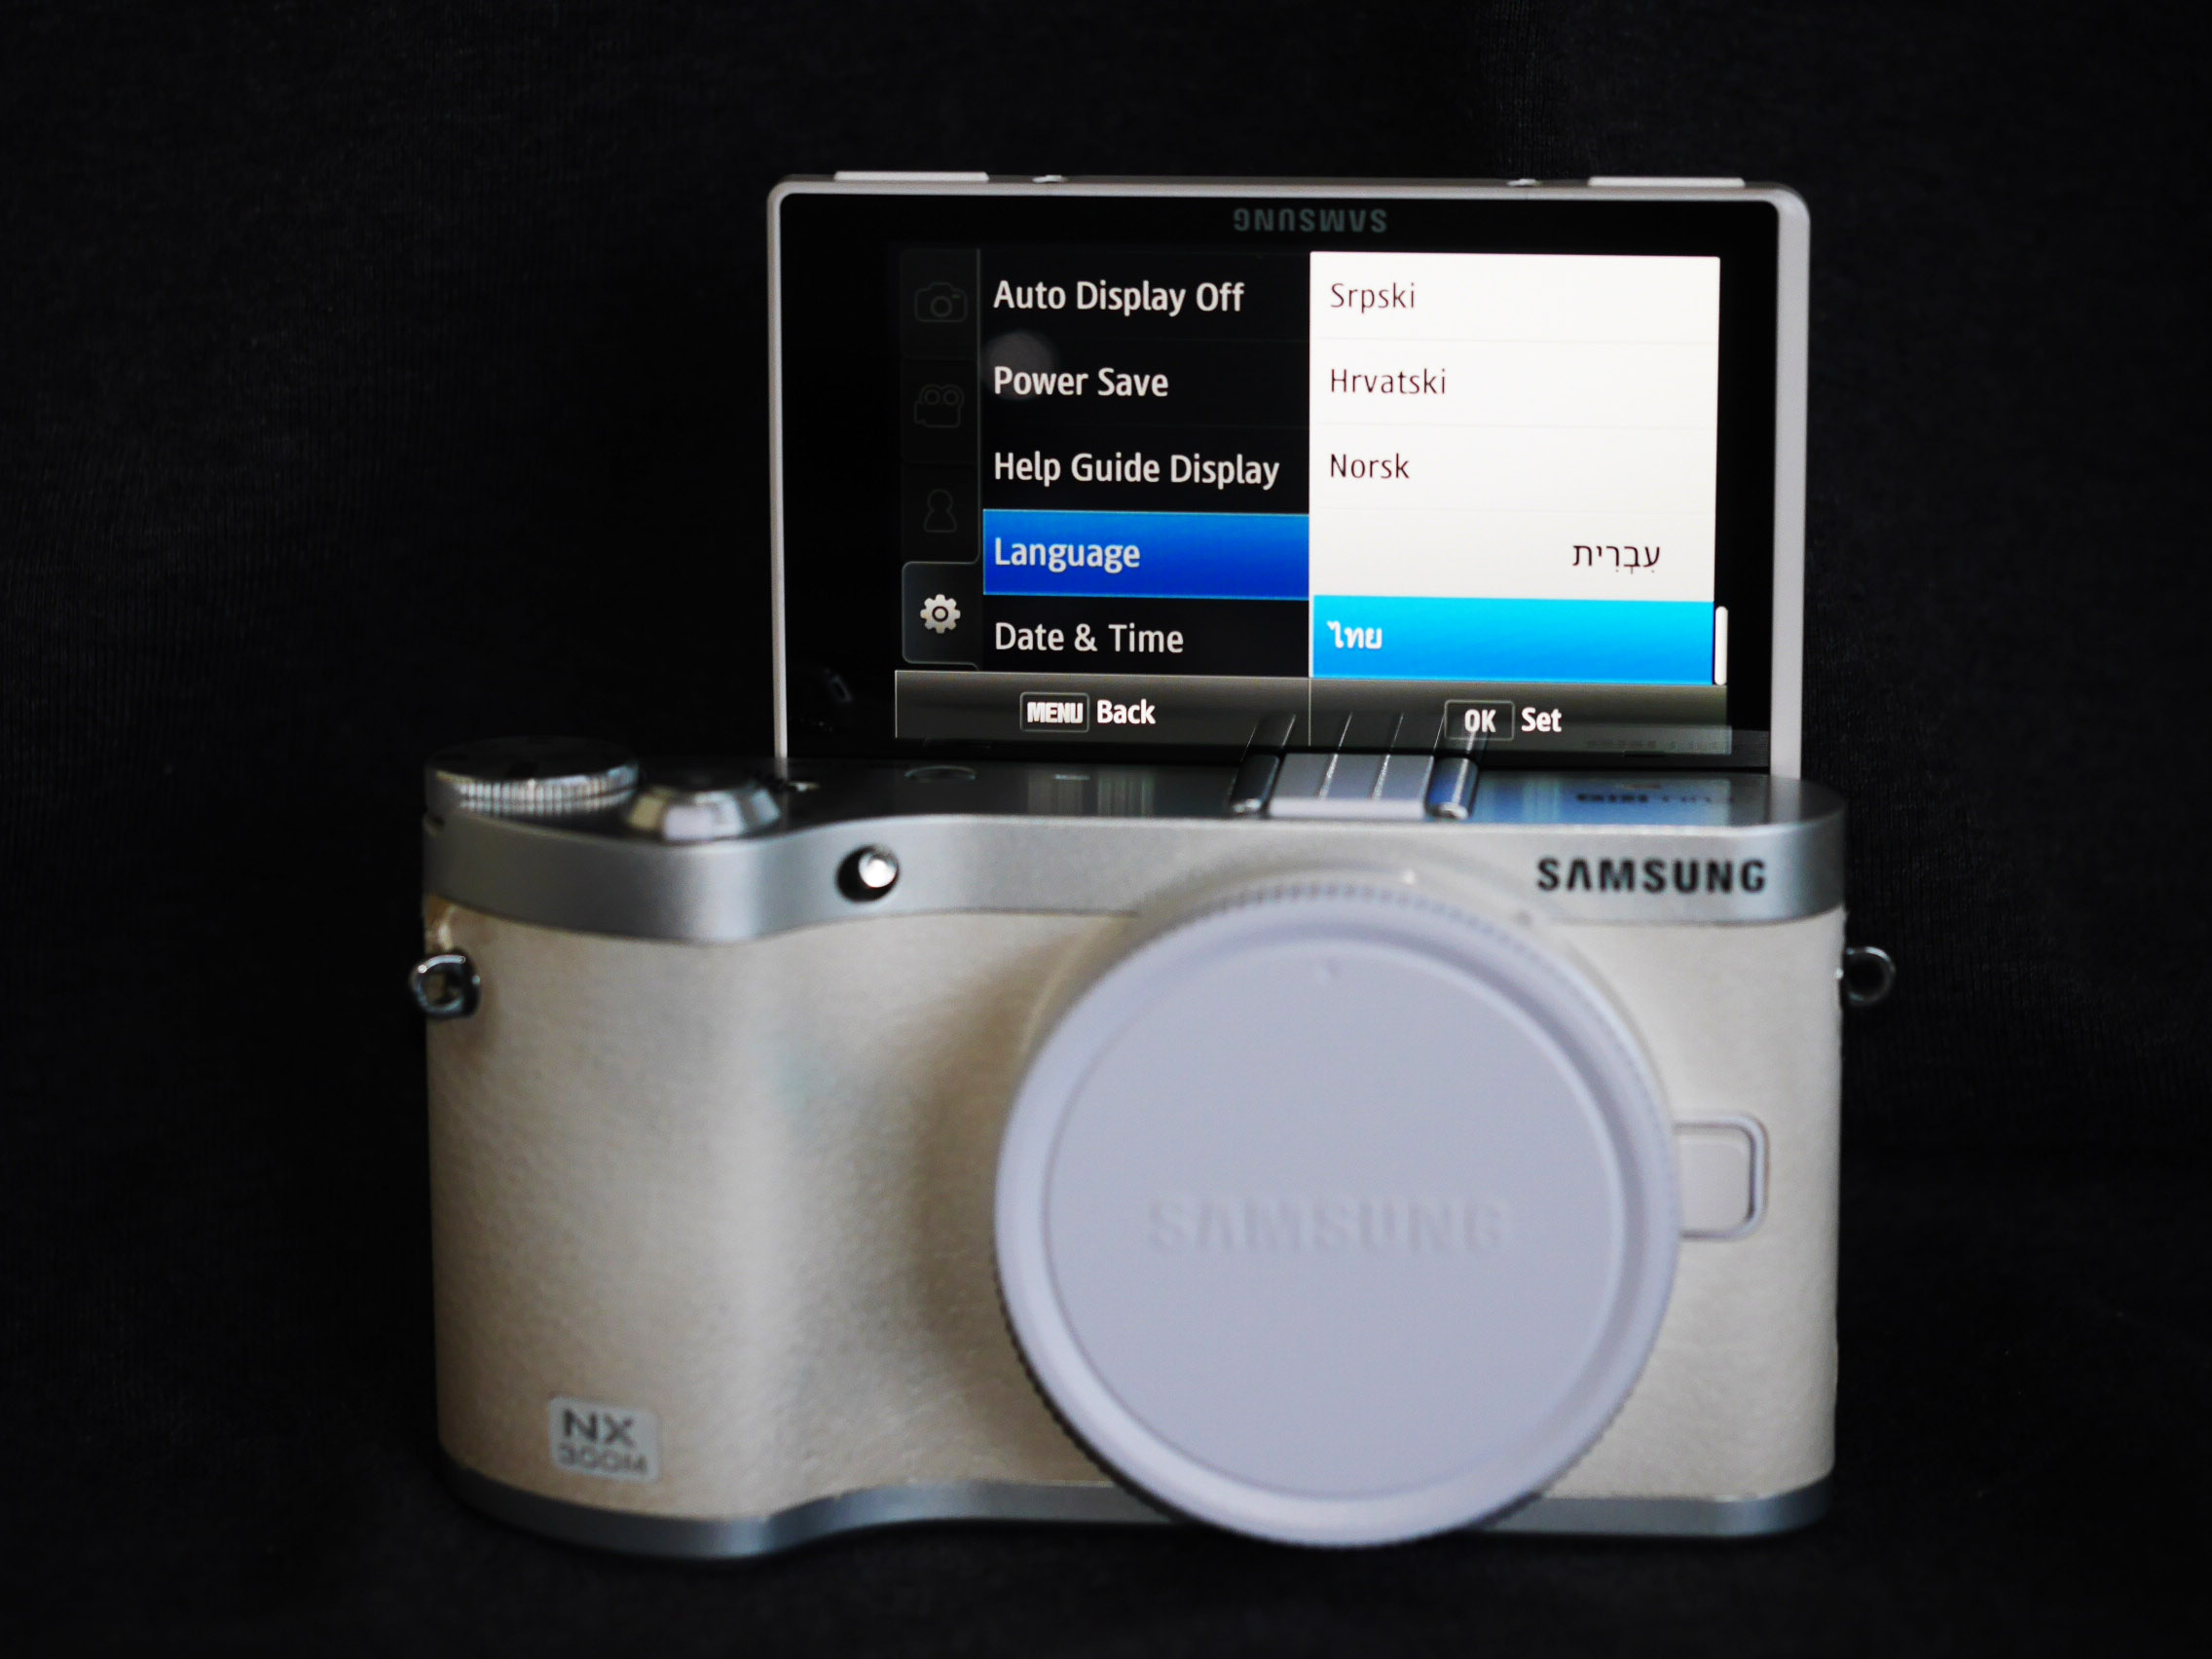 Samsung NX300M Wi-Fi BT NFC White Body, NX Series 300M, Galaxy NX300 M Mirrorless Digital Camera ( EV-NX300MBQUUS )